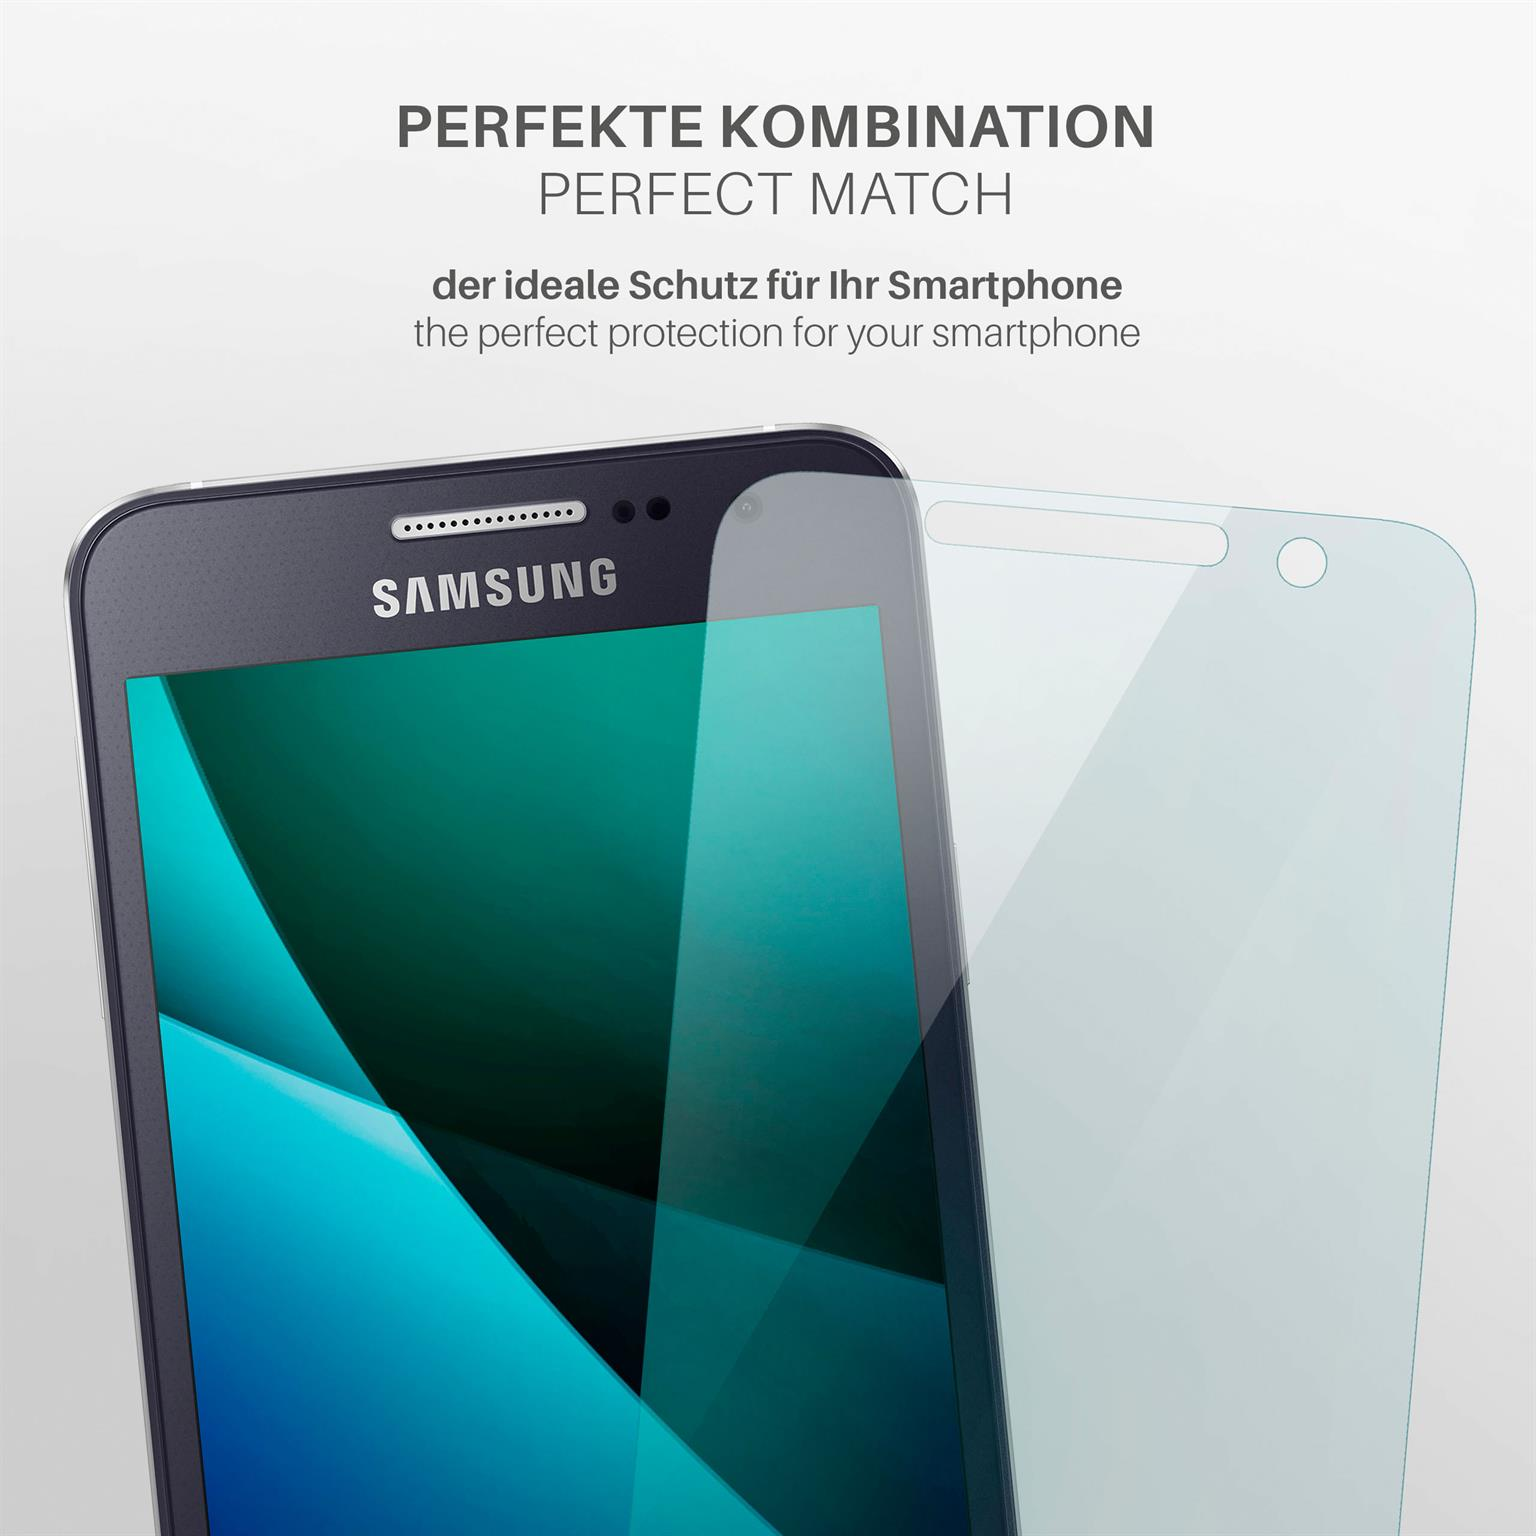 A3 (2015)) Displayschutz(für 3x Schutzfolie, Galaxy MOEX Samsung klar